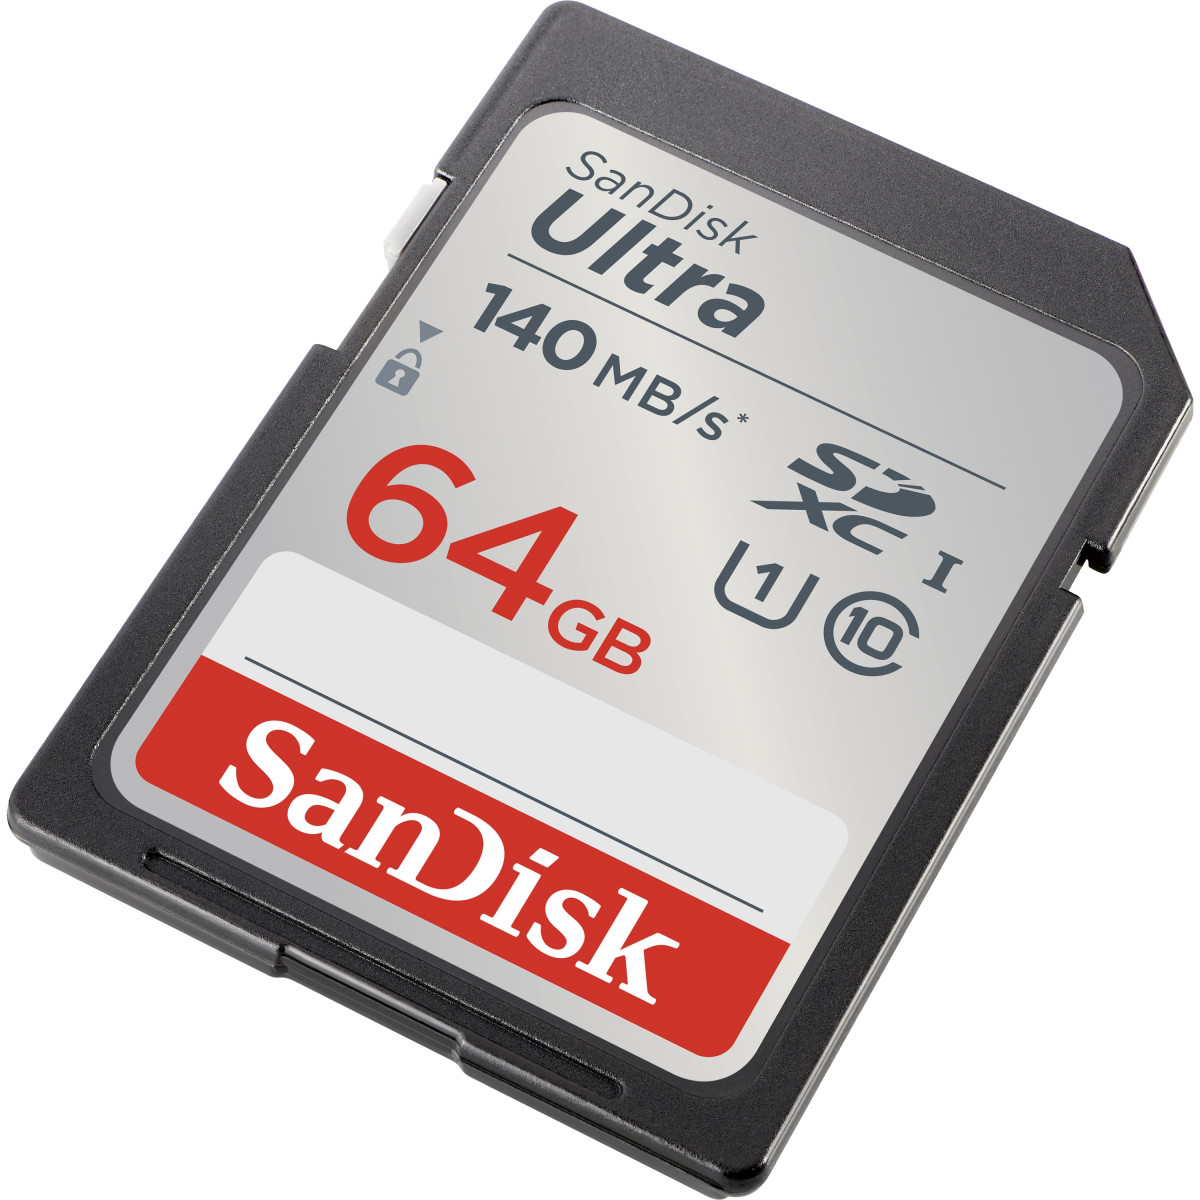 FC 64GB Ultra SD